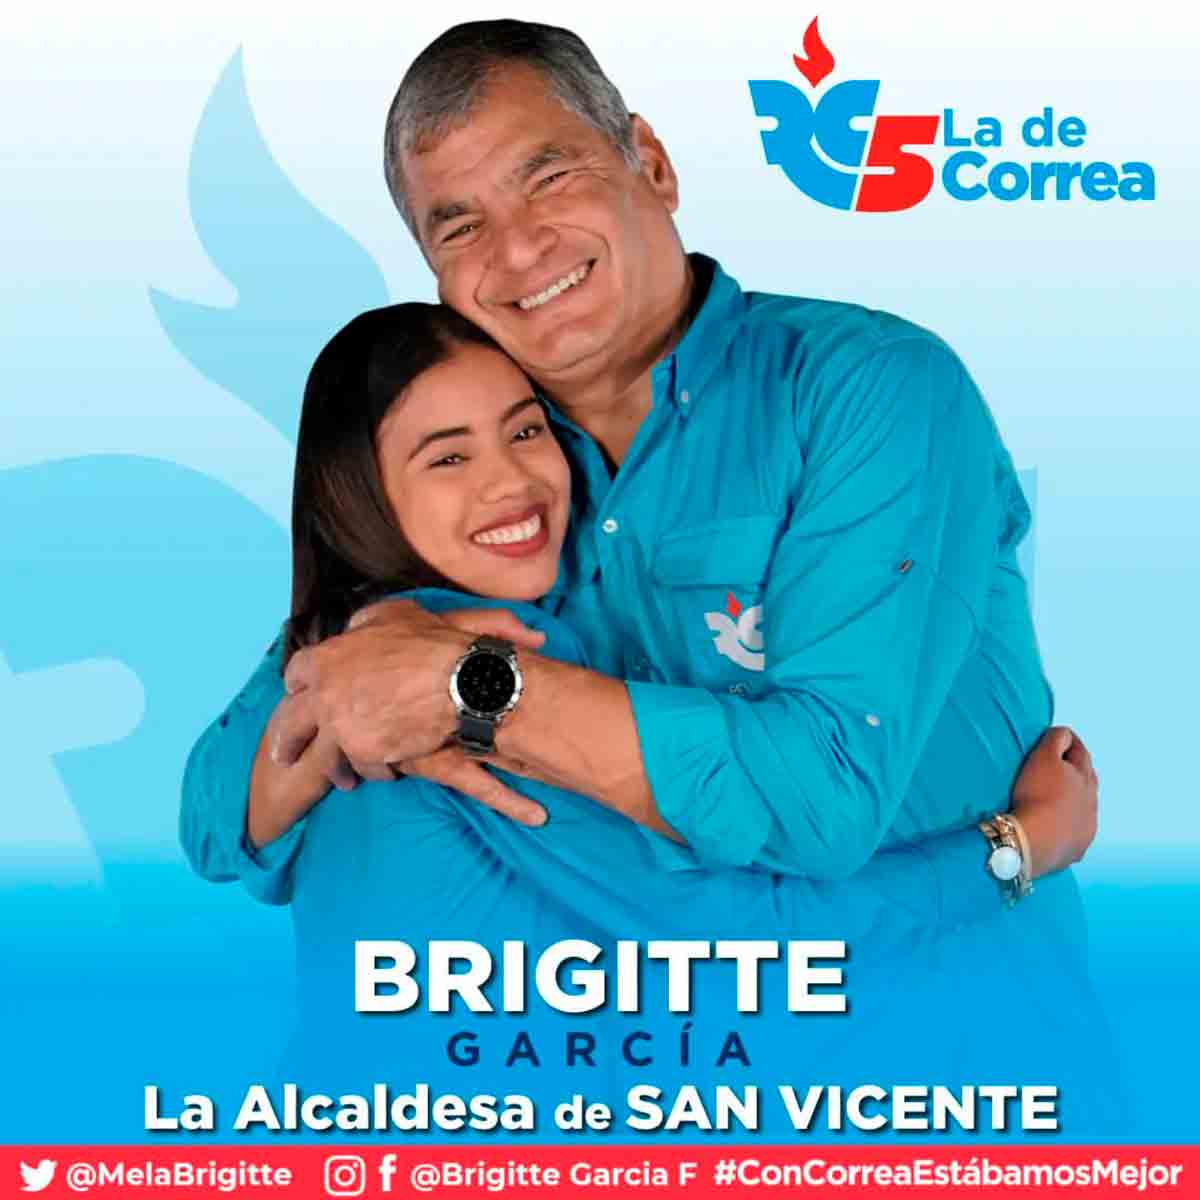 Brigitte García was a member of the Revolución Ciudadana party of former President Rafael Correa